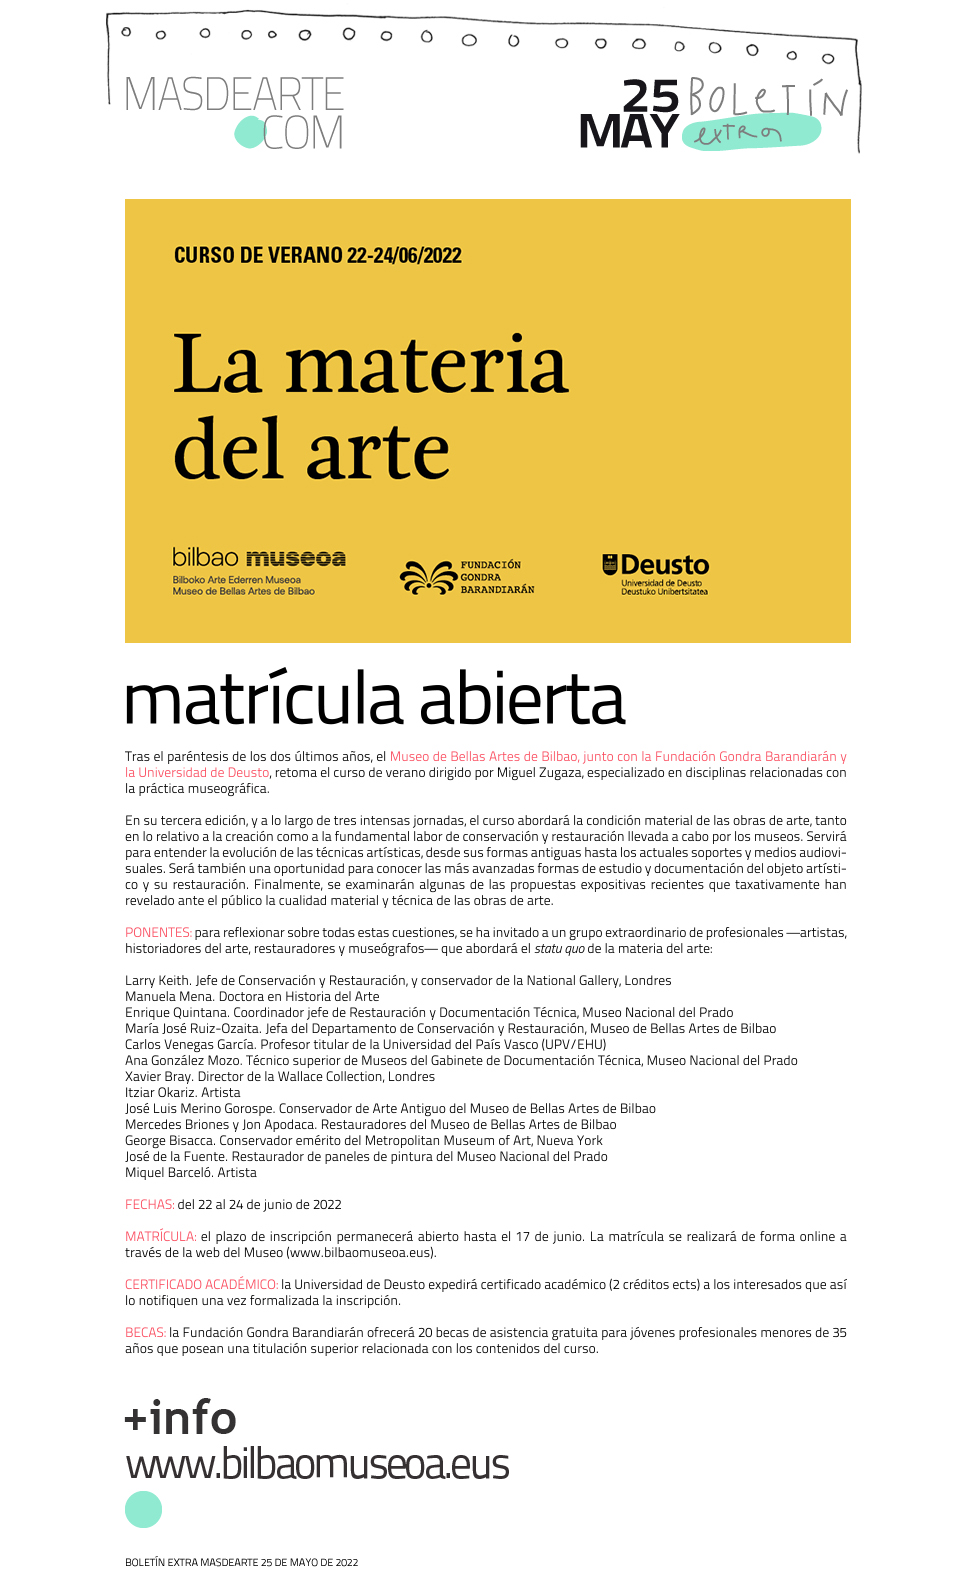 Extra masdearte: La materia del arte. Curso de verano del Museo de
 Bellas Artes de Bilbao